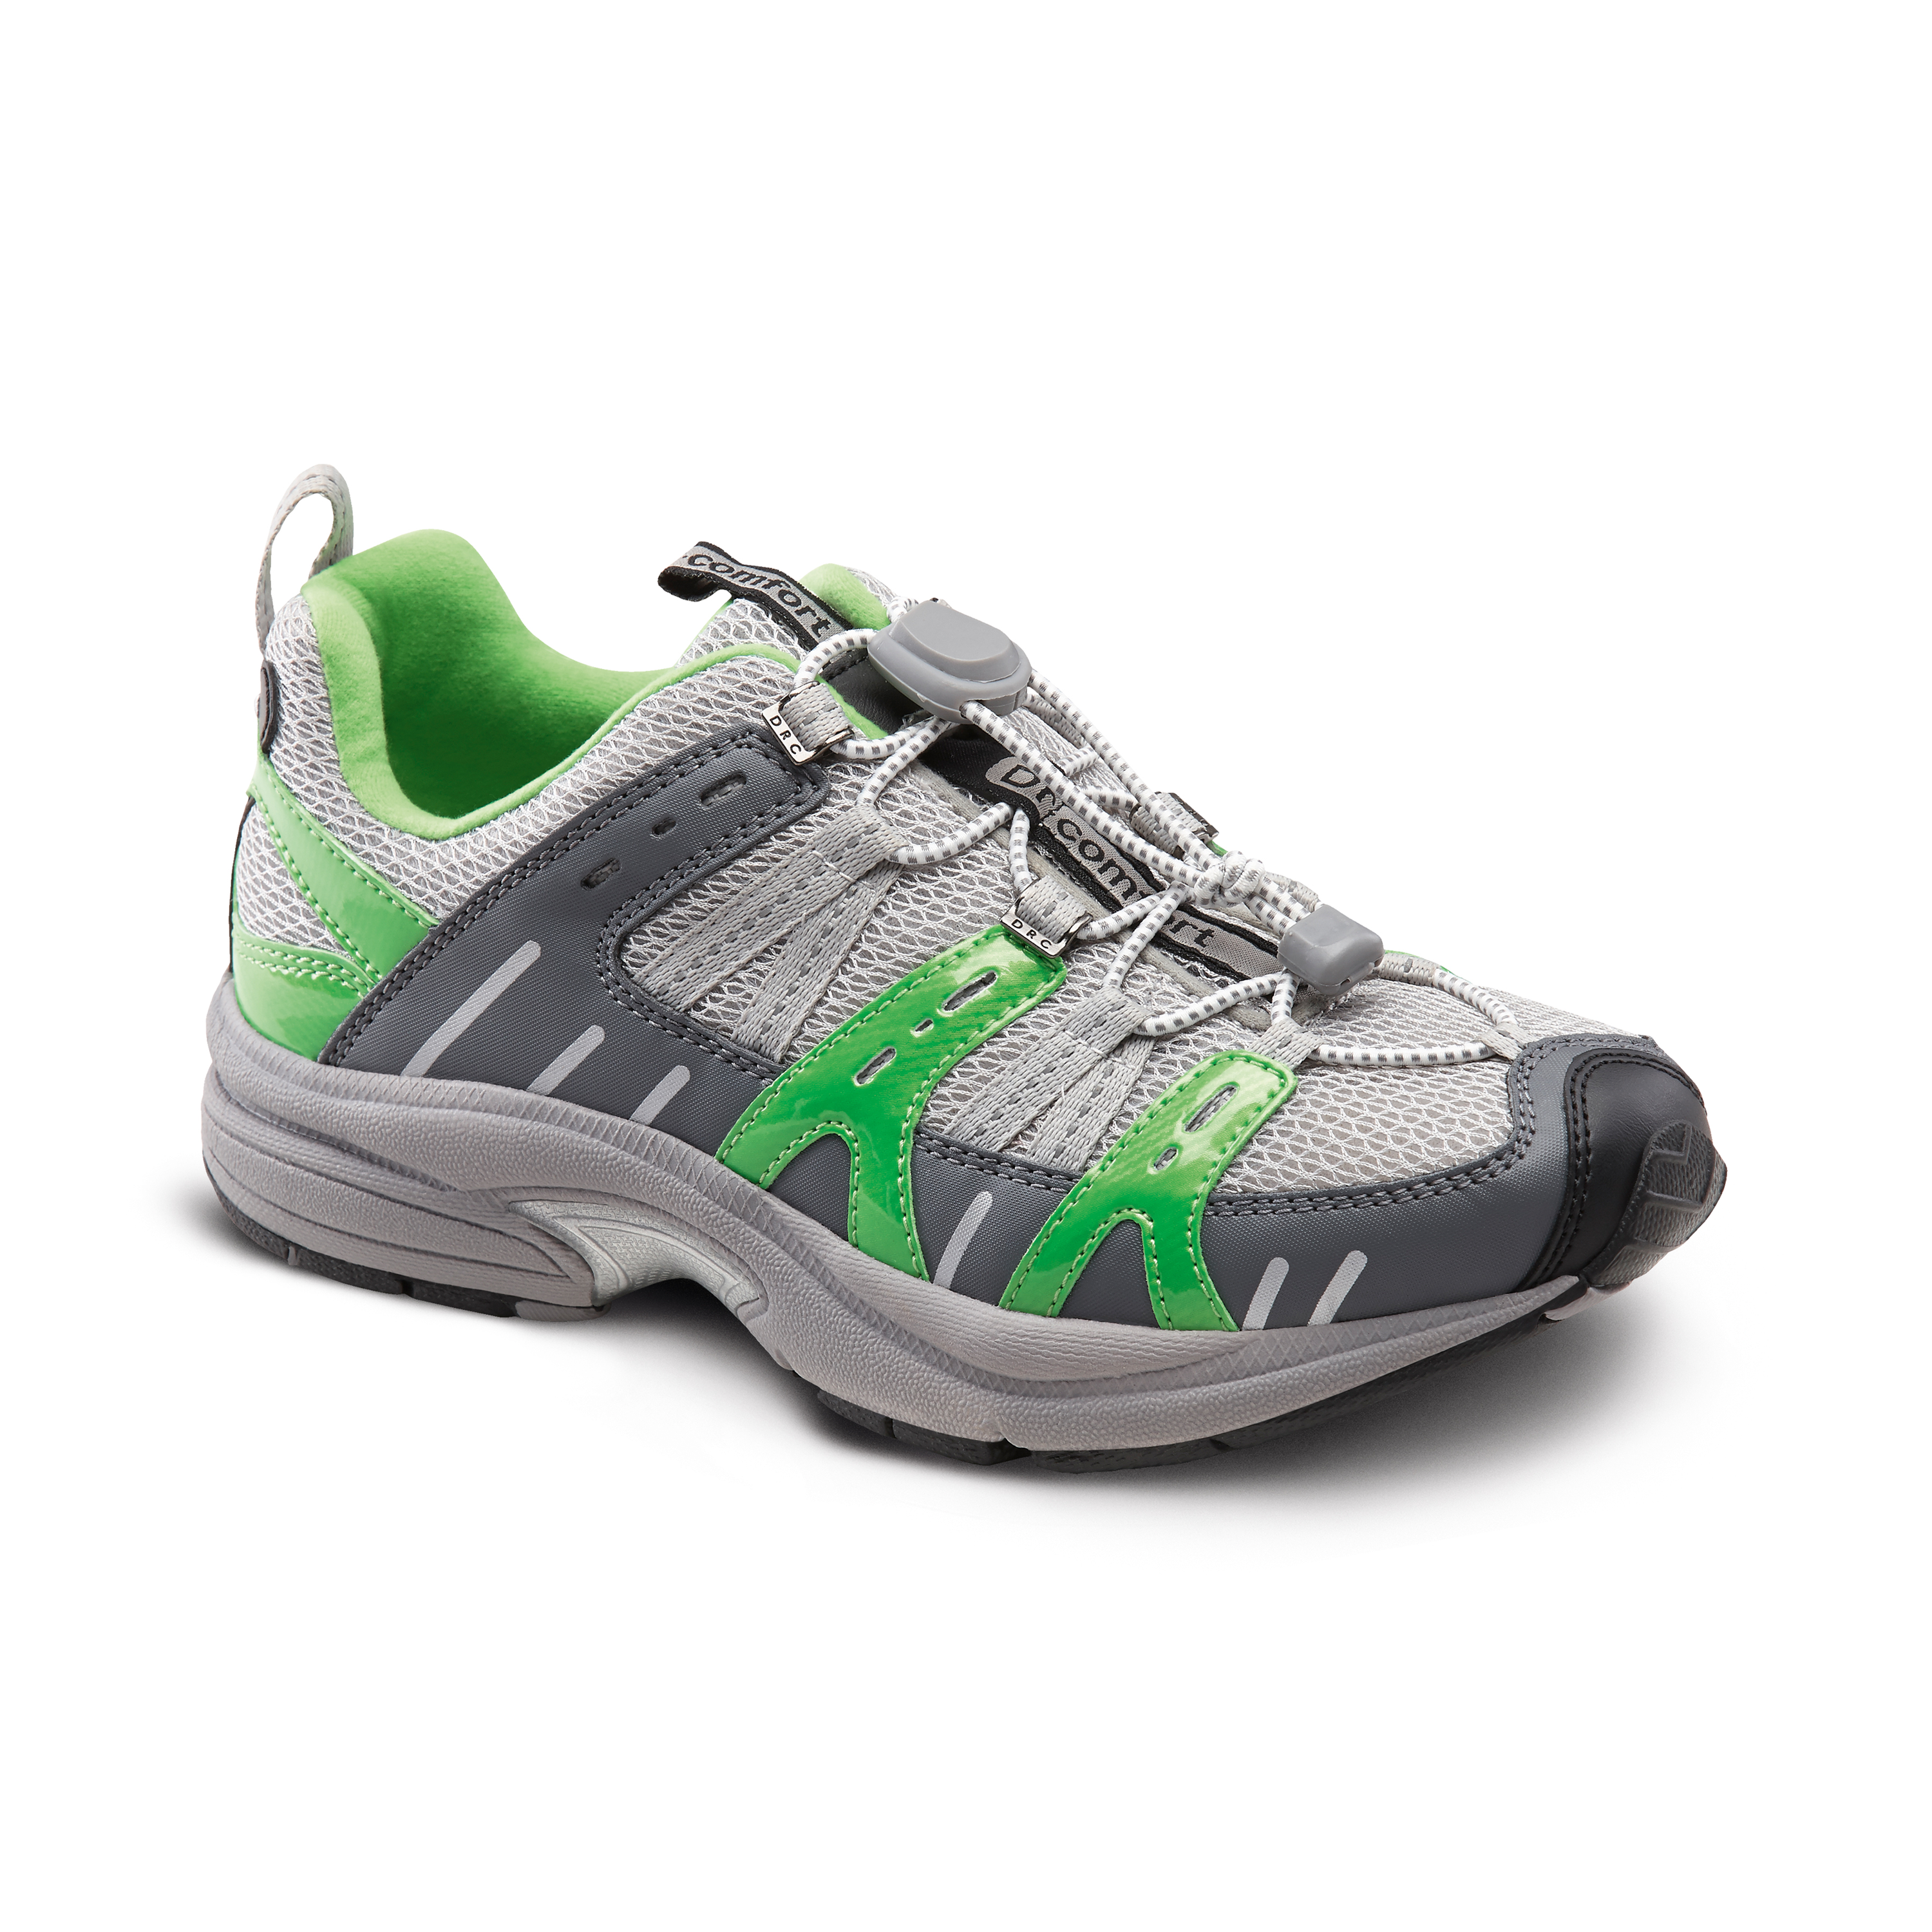 Produktbild DR. COMFORT® Refresh grün, Orthopädische Schuhe, Besonders weicher und leichter Freizeitschuh